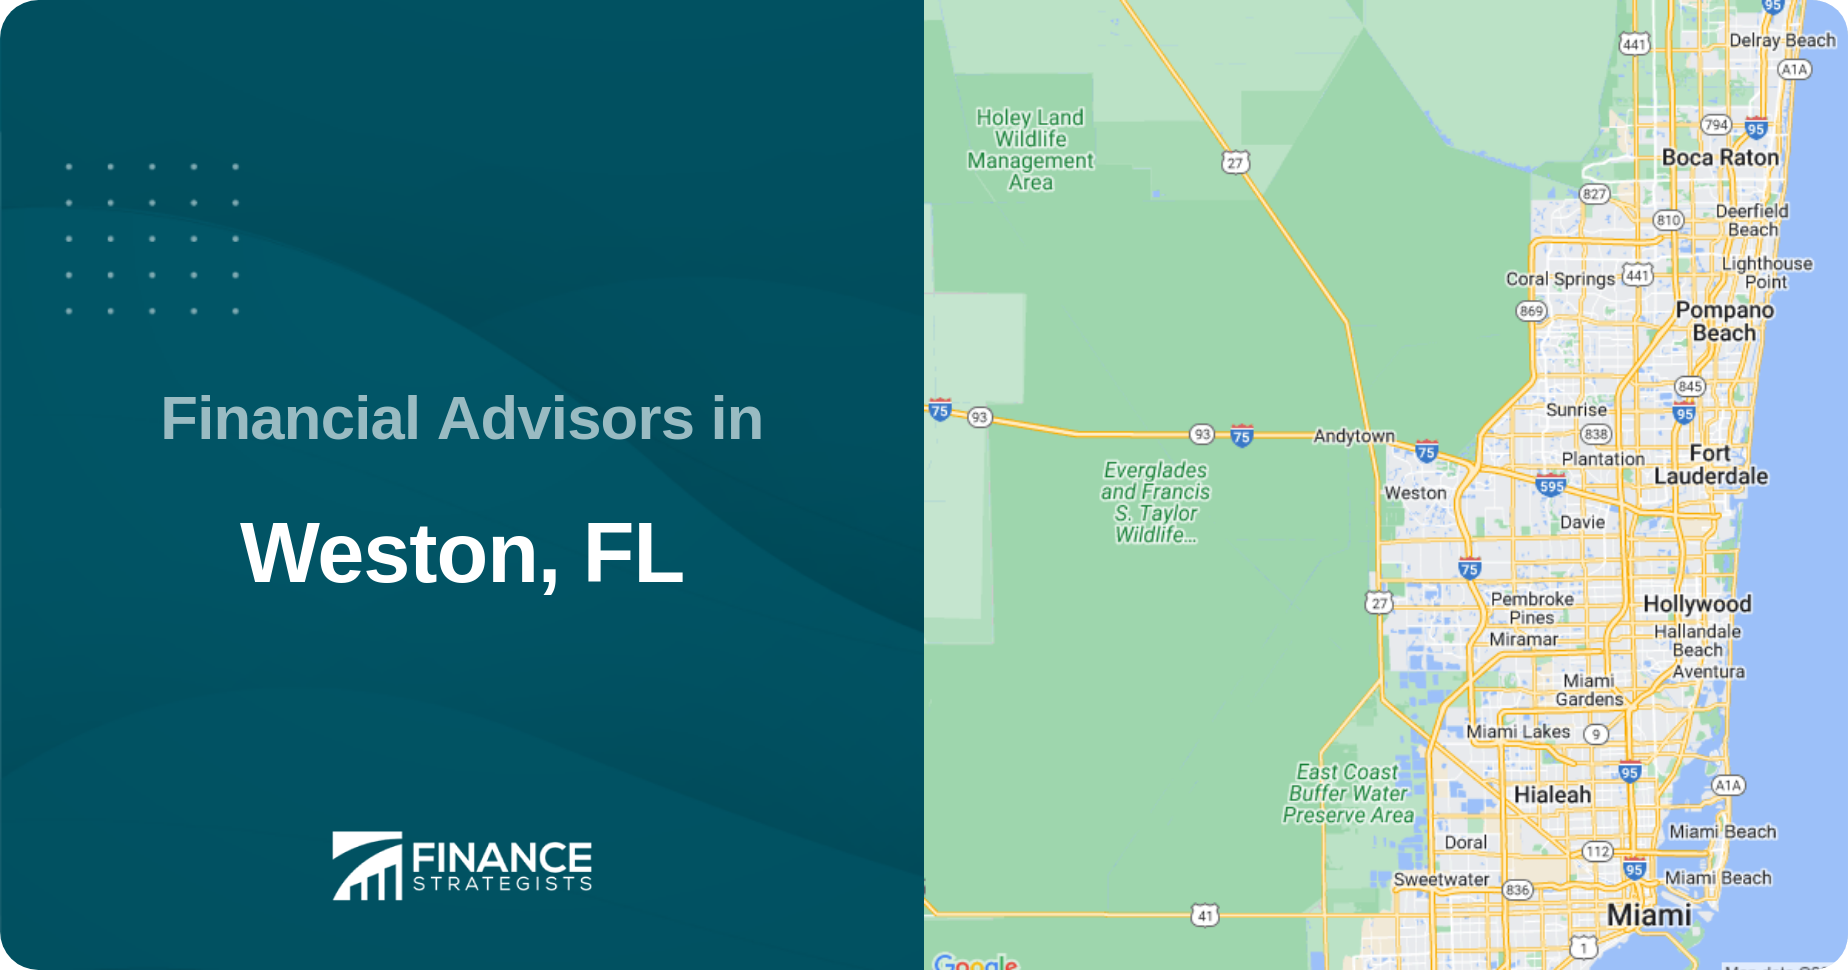 Financial Advisors in Weston, FL